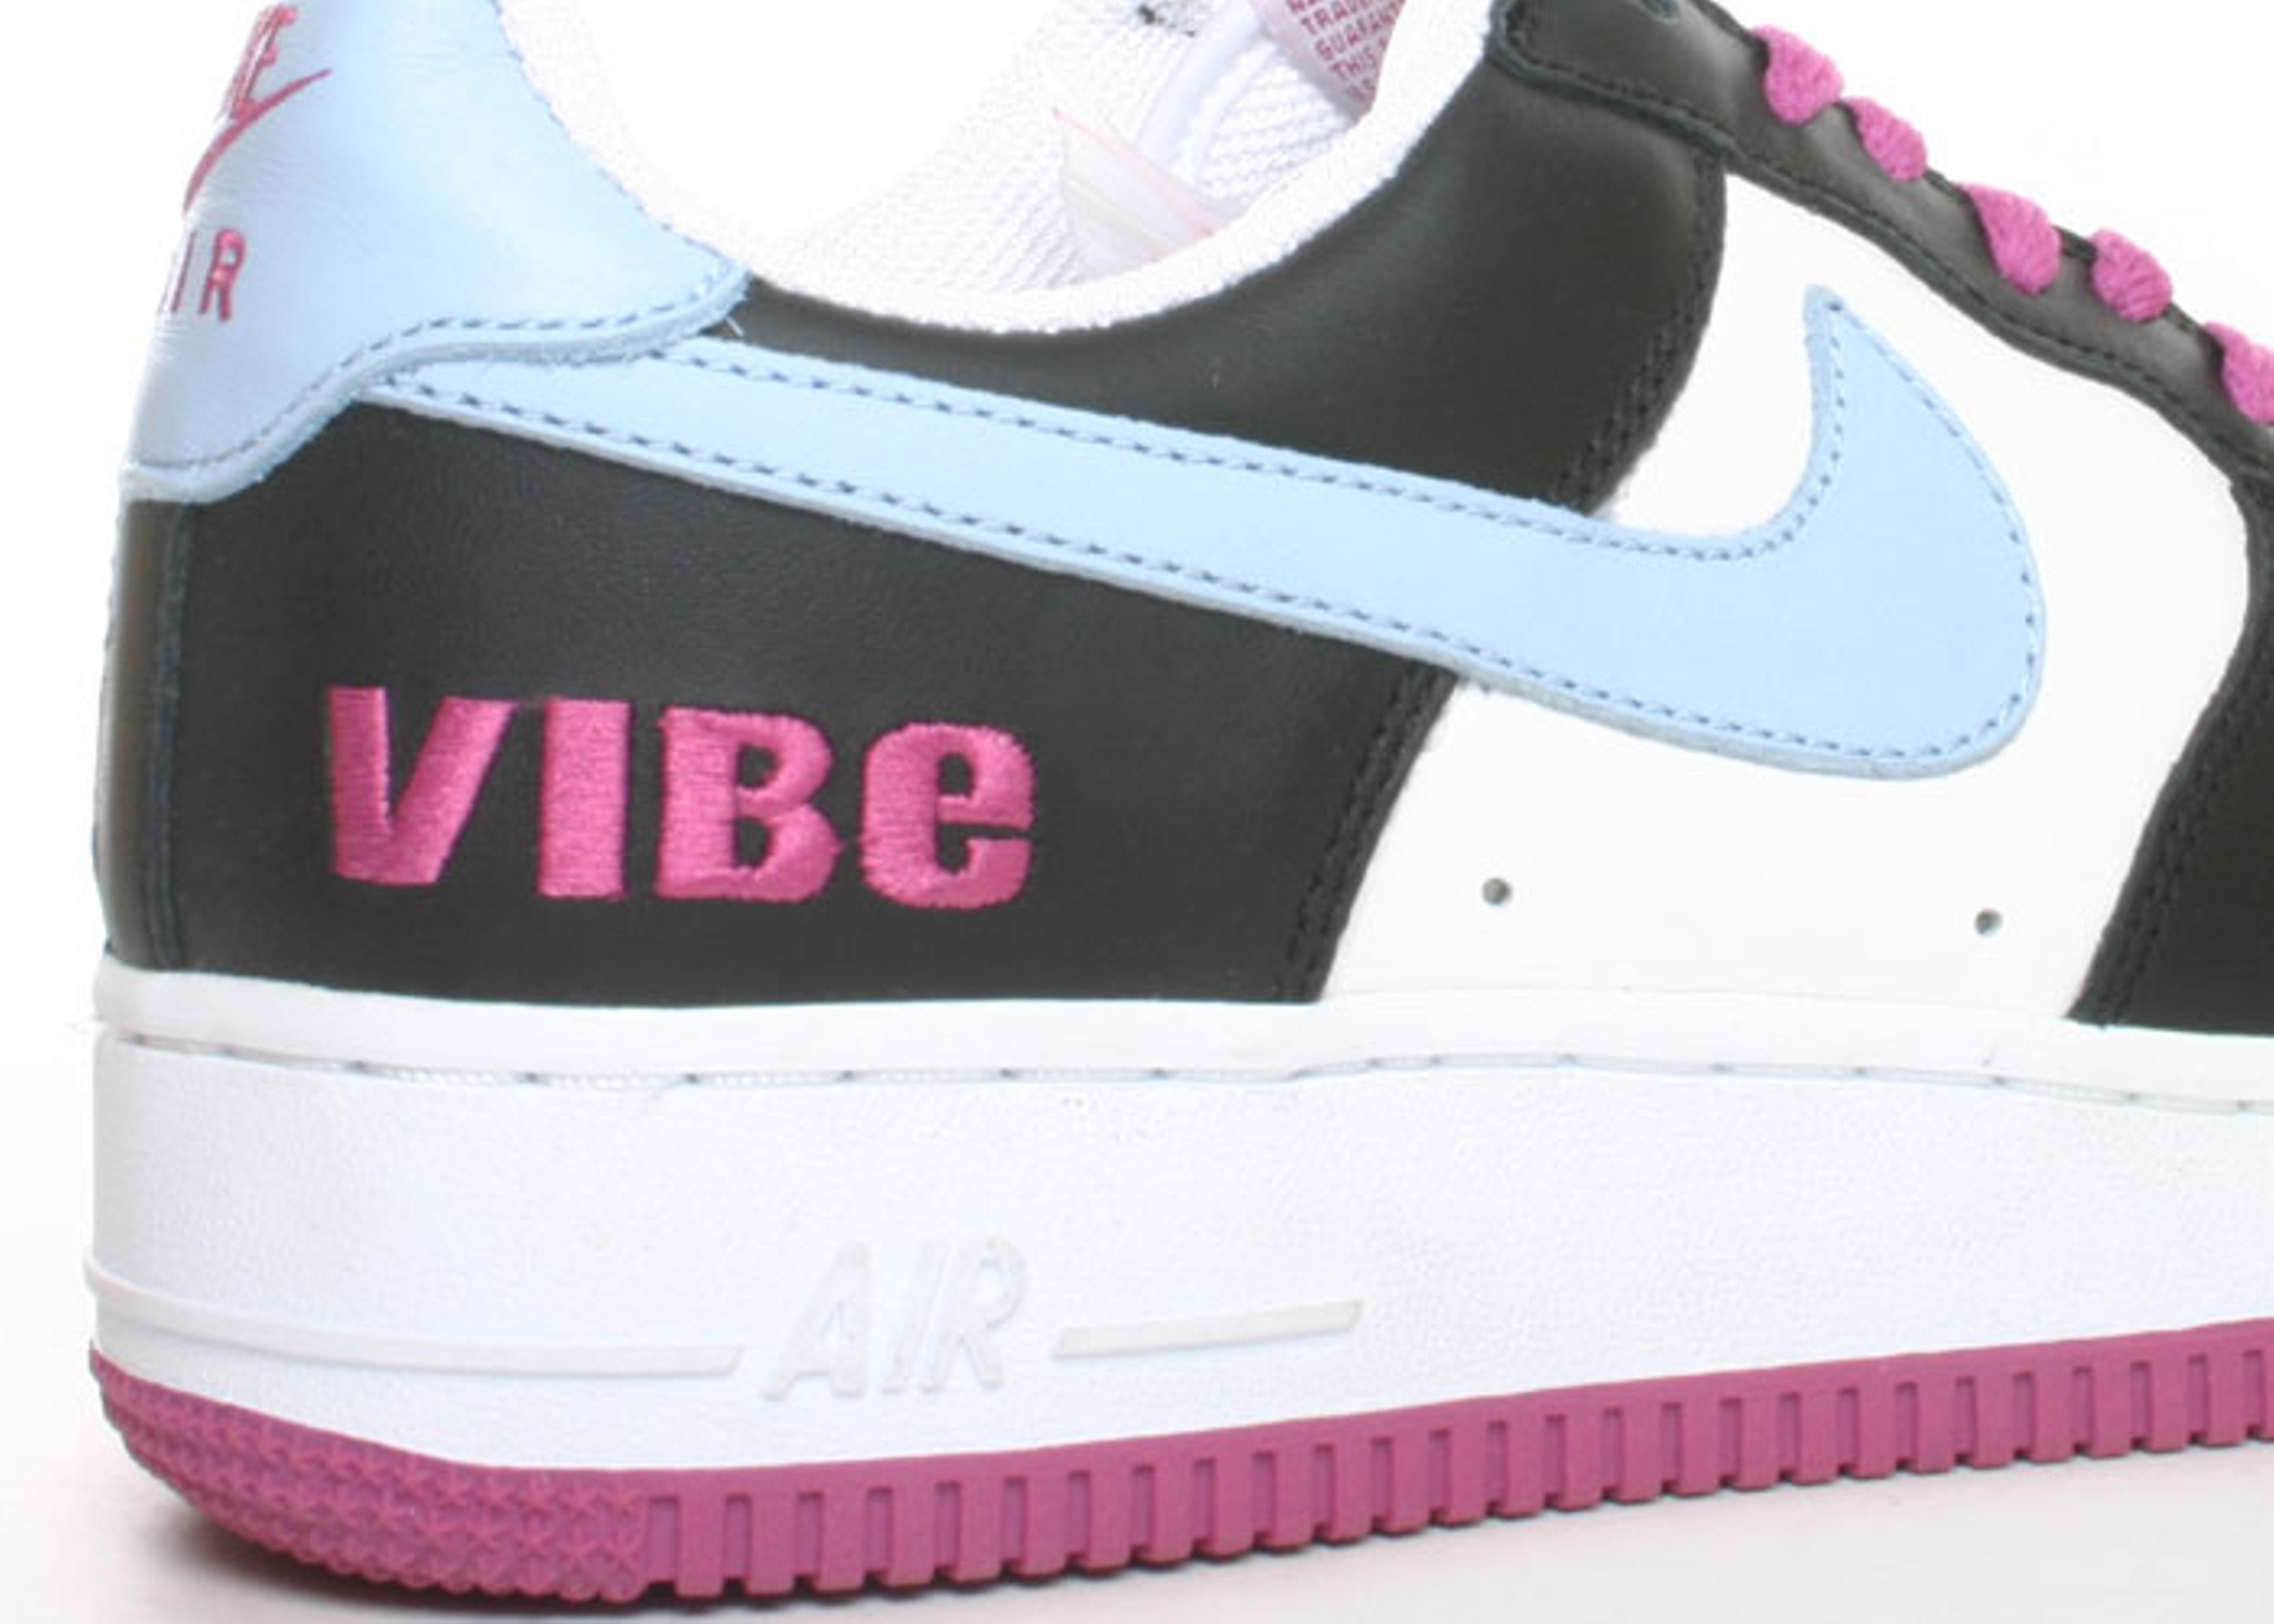 Air Force 1 'Vibe' - Nike - 306033 141 